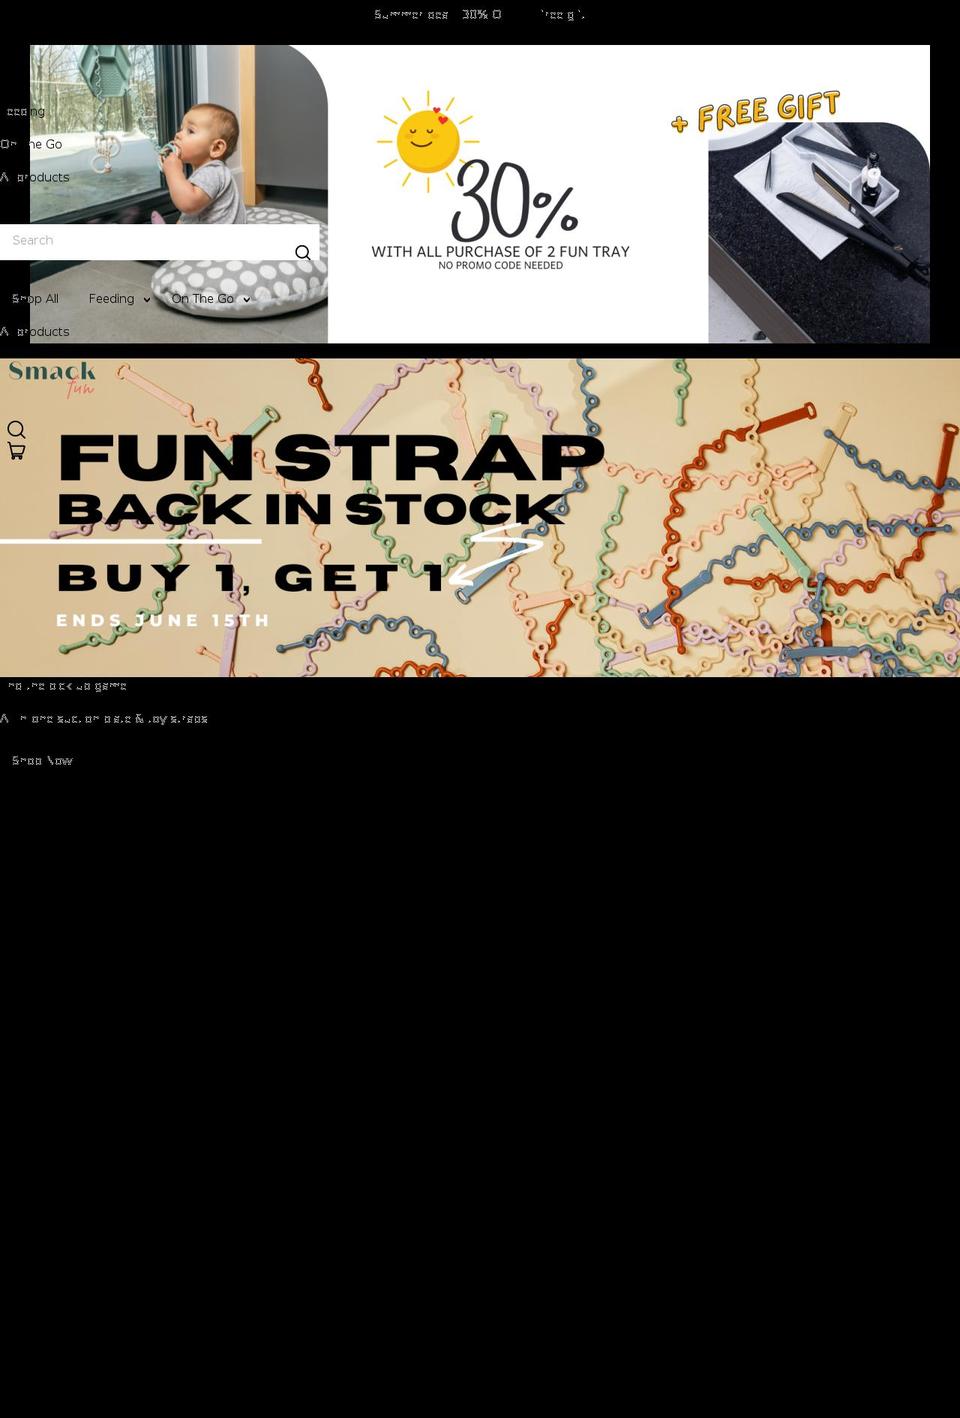 Shapes Shopify theme site example smackfun.com